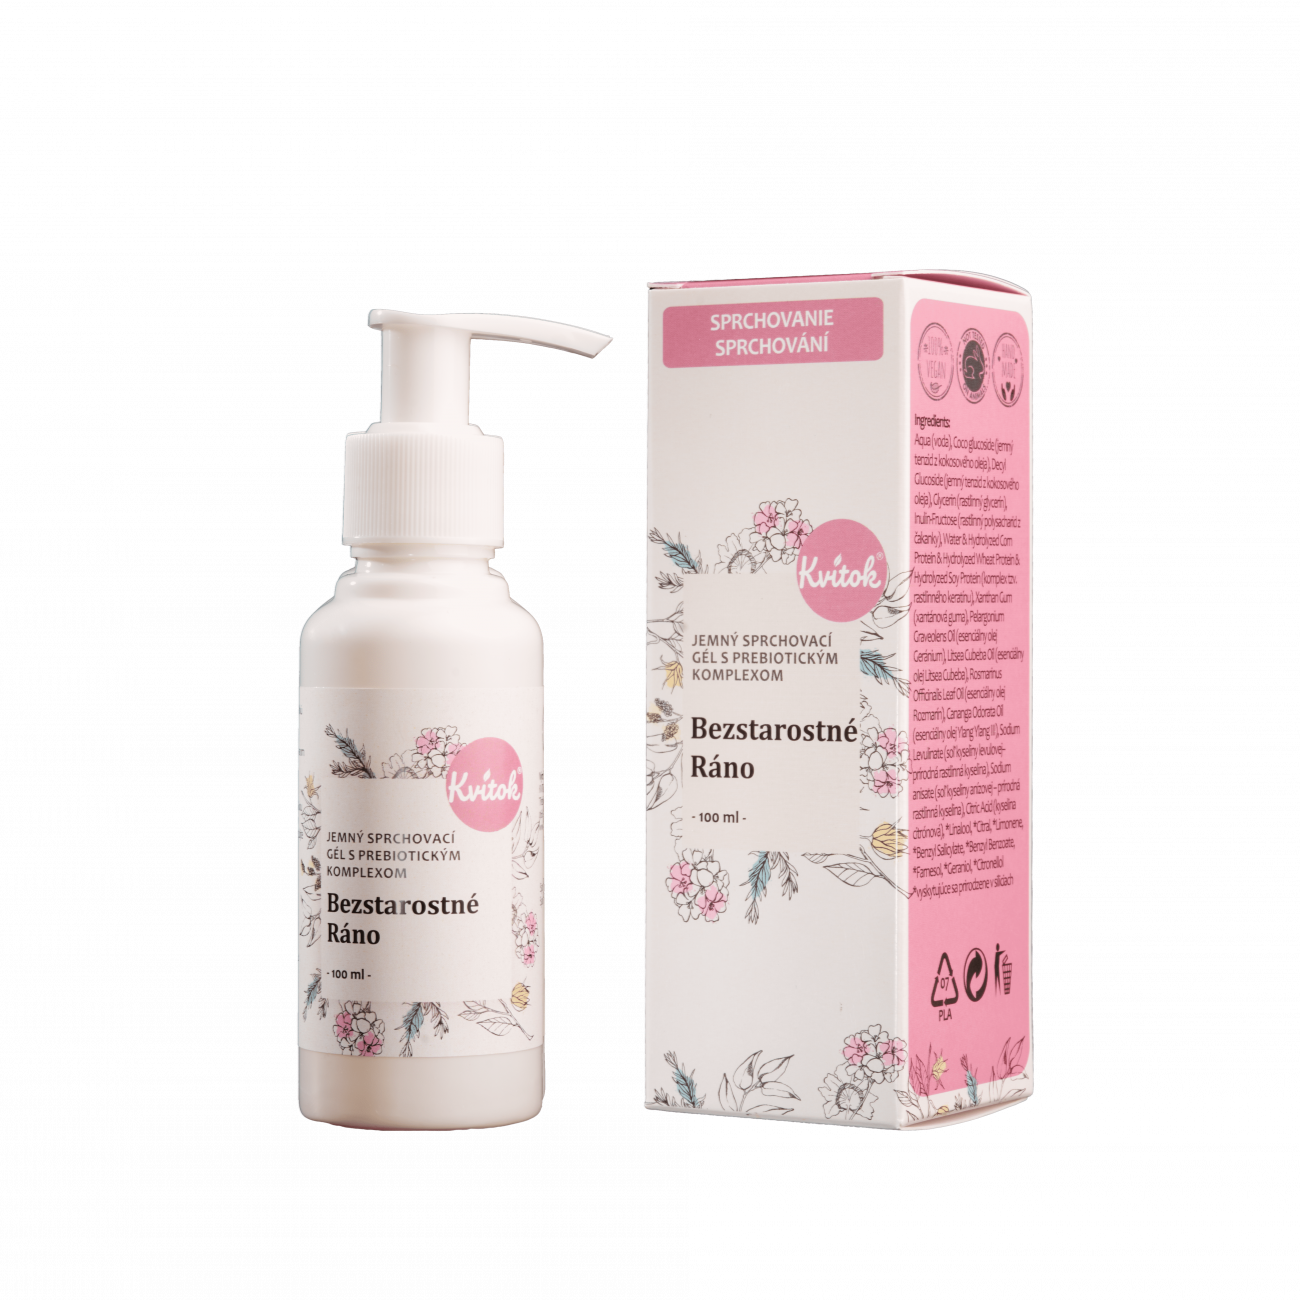 Kvitok Jemný sprchový gel s prebiotickým komplexem Bezstarostné ráno (100 ml) - s jemnou květinovou vůní Kvitok